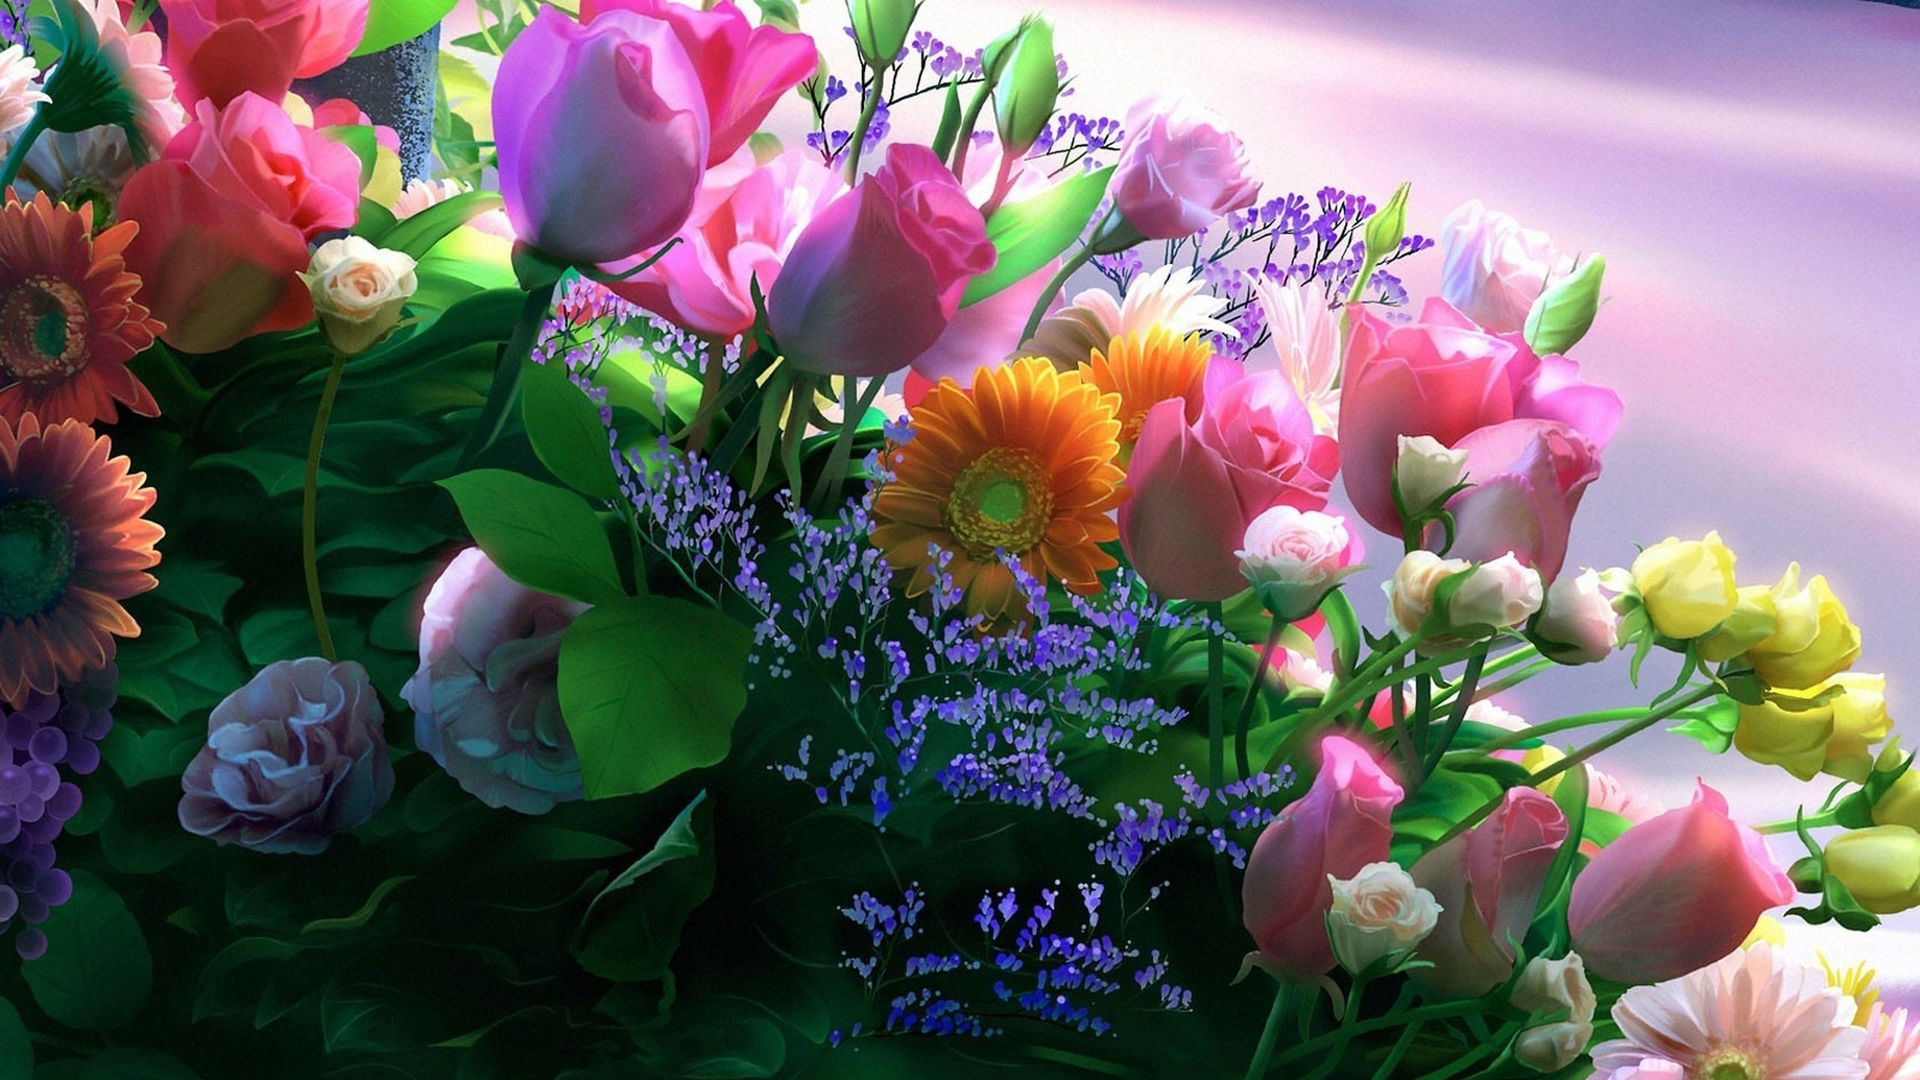 Обои на рабочий стол букеты цветов красивые